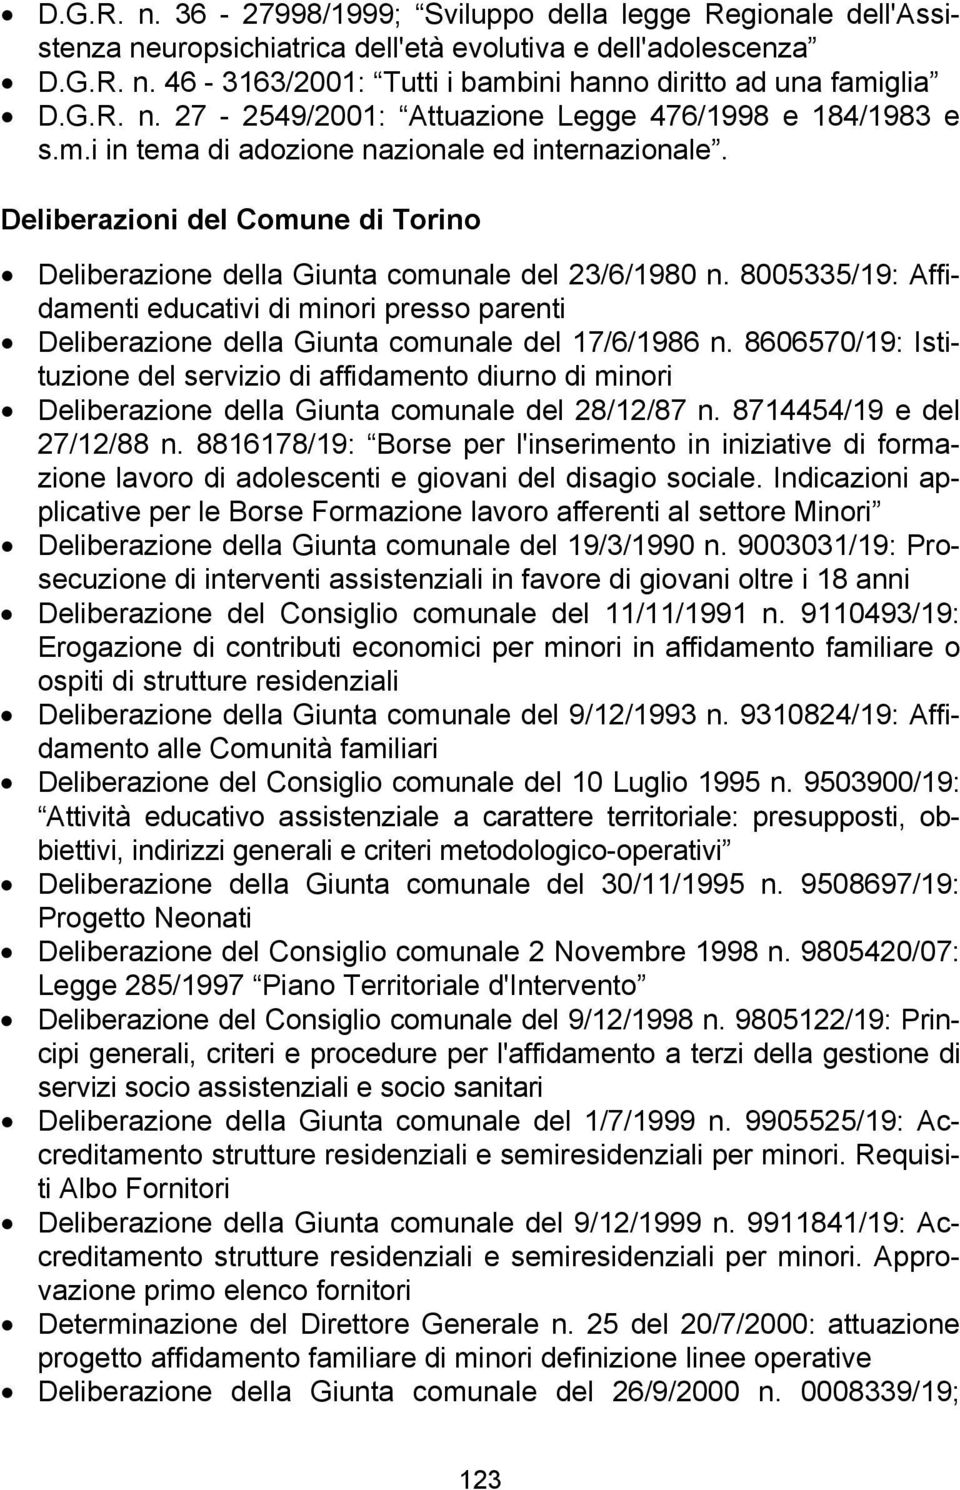 Deliberazioni del Comune di Torino Deliberazione della Giunta comunale del 23/6/1980 n. 8005335/19: Affidamenti educativi di minori presso parenti Deliberazione della Giunta comunale del 17/6/1986 n.